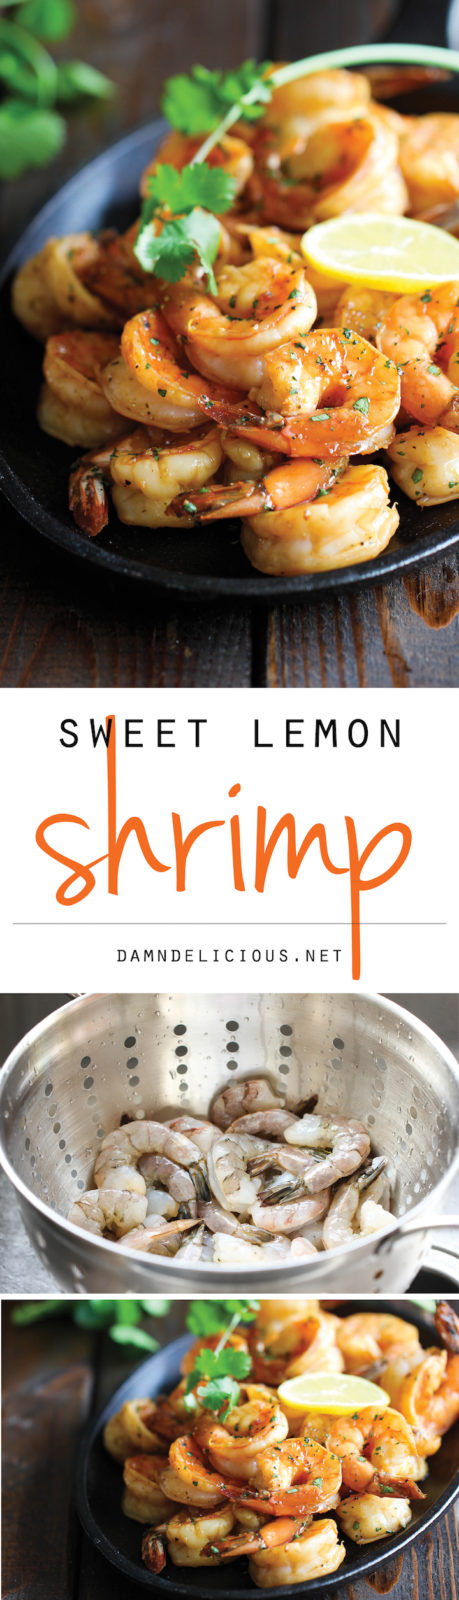 Sweet Lemon Shrimp - Damn Delicious